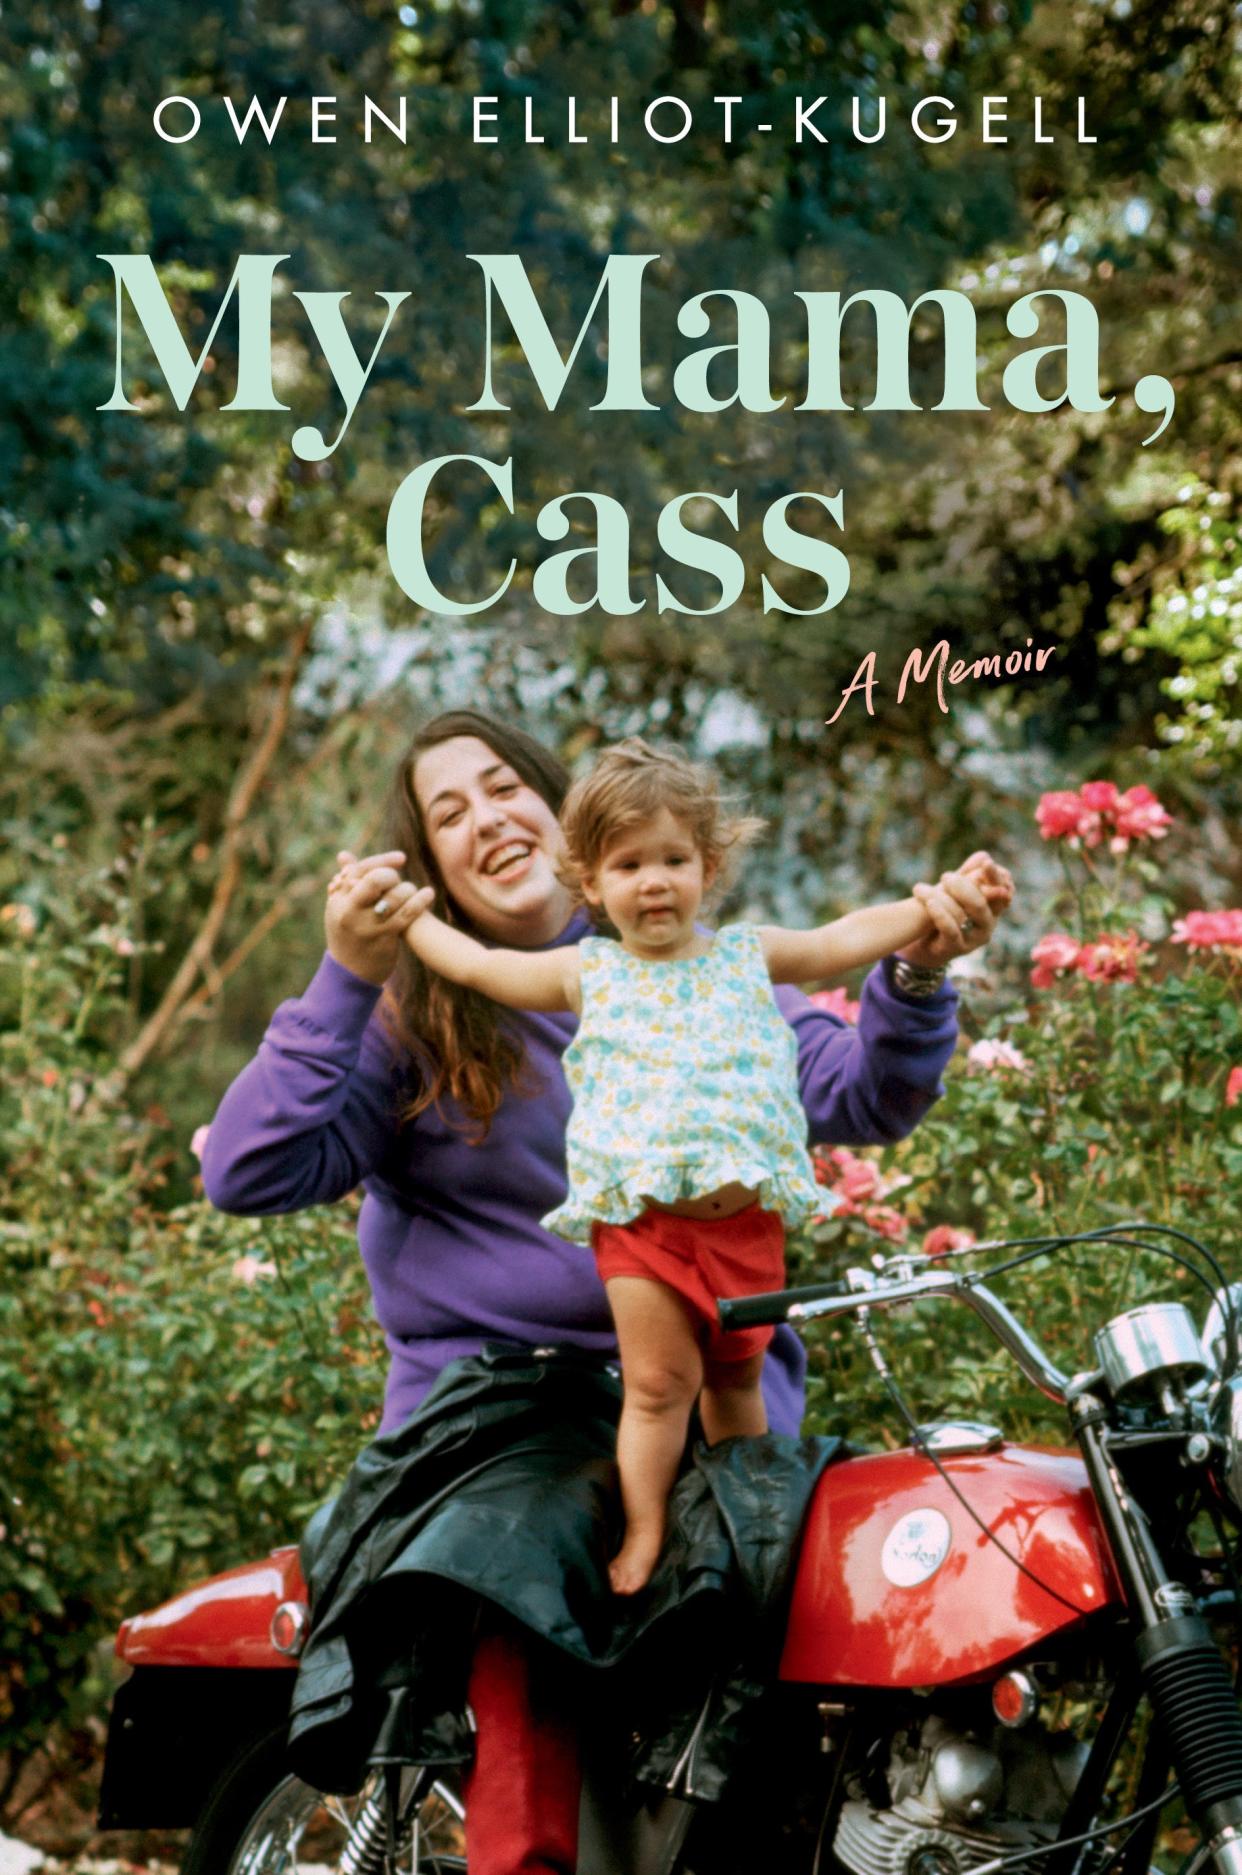 "My Mama, Cass: A Memoir," explores the life and times of Cass Elliot, as seen through the pen of her daughter, Owen Elliot-Kugell.